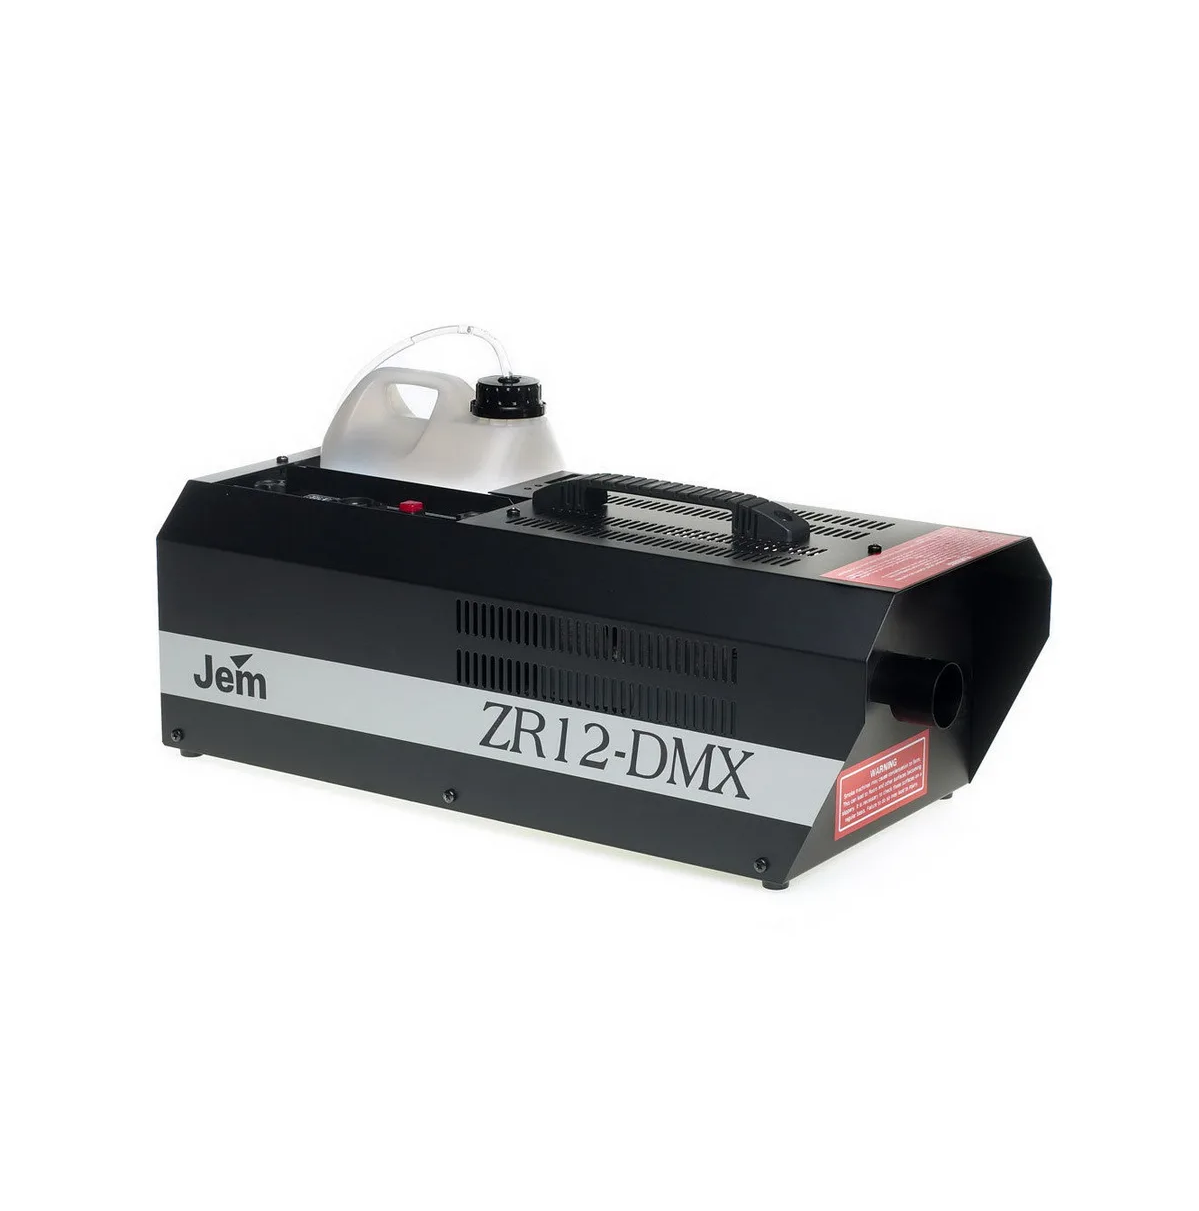 Ооо дмх. Jem zr12. Генератор дыма для дискотек DMX 512. Генератор дыма fm 1.500 DMX. DMX 512 Jem Fan.